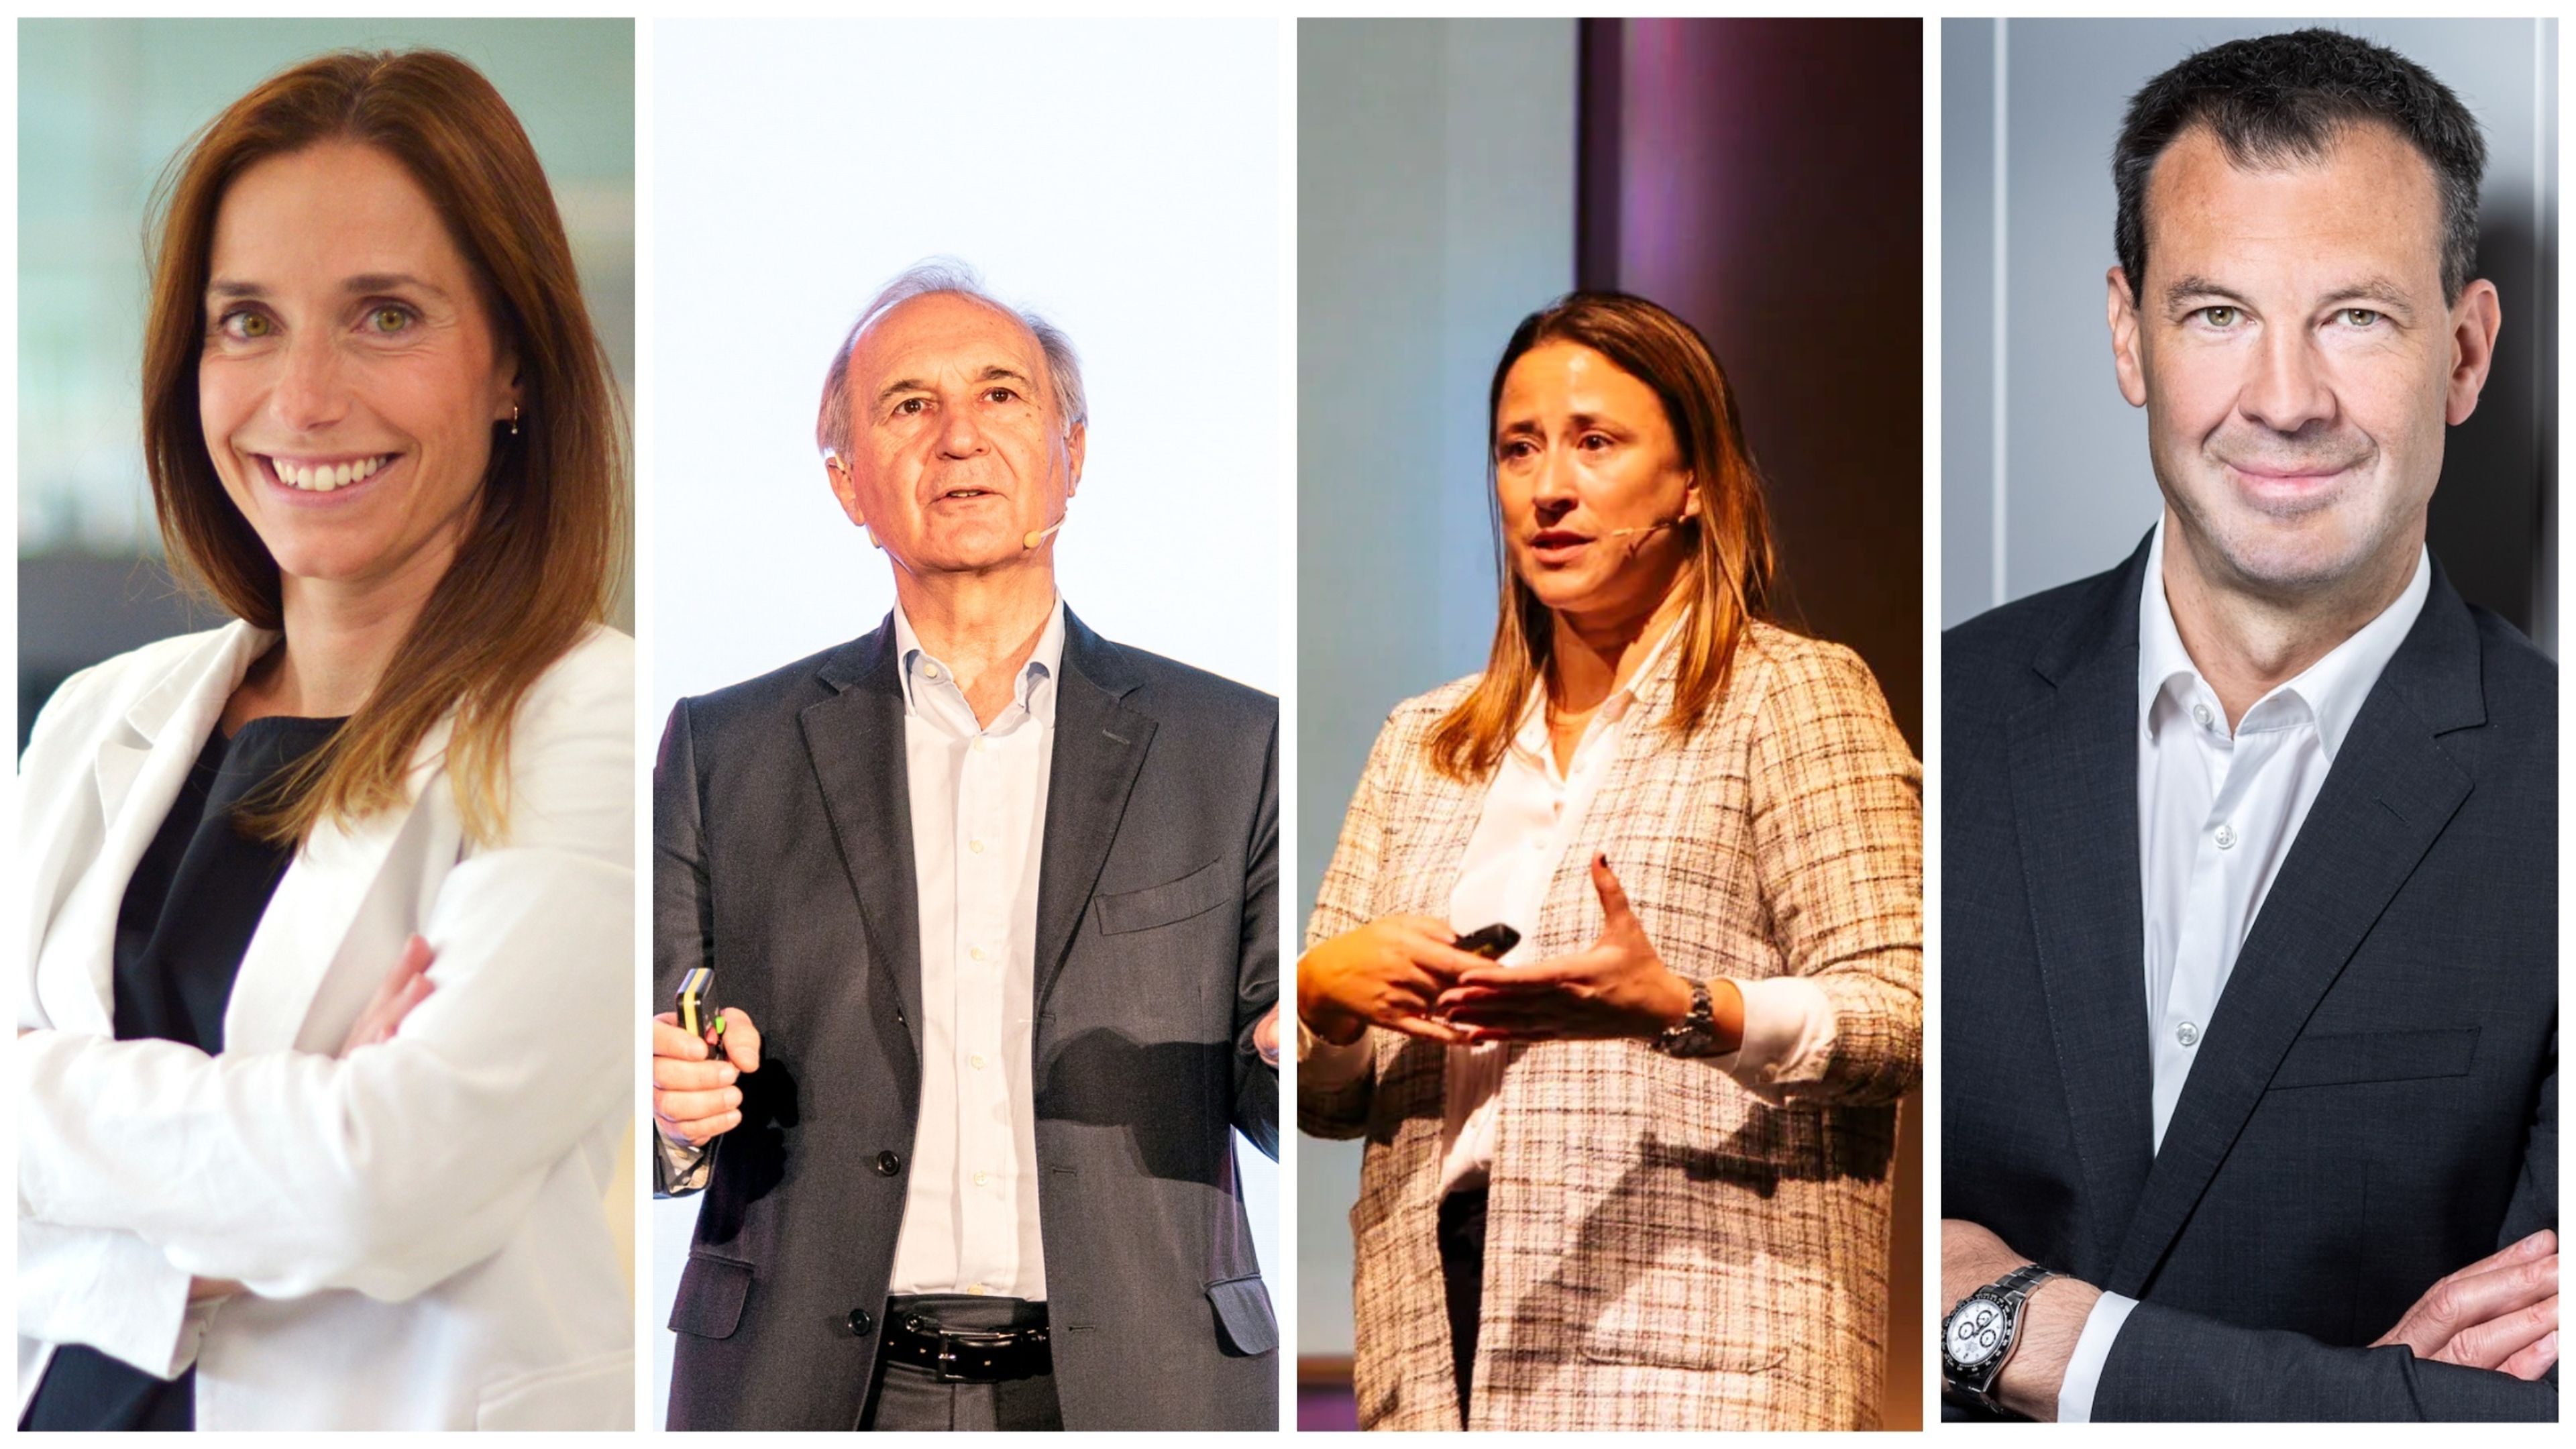 De izquierda a derecha: Teresa Acha-Orbea, CEO de SPC; Enrico Salvatori, vicepresidente de Qualcomm; Andrea Monleon, general manager de Motorola Mobility Iberia, y Rolf Werner, director de Nokia Europa.